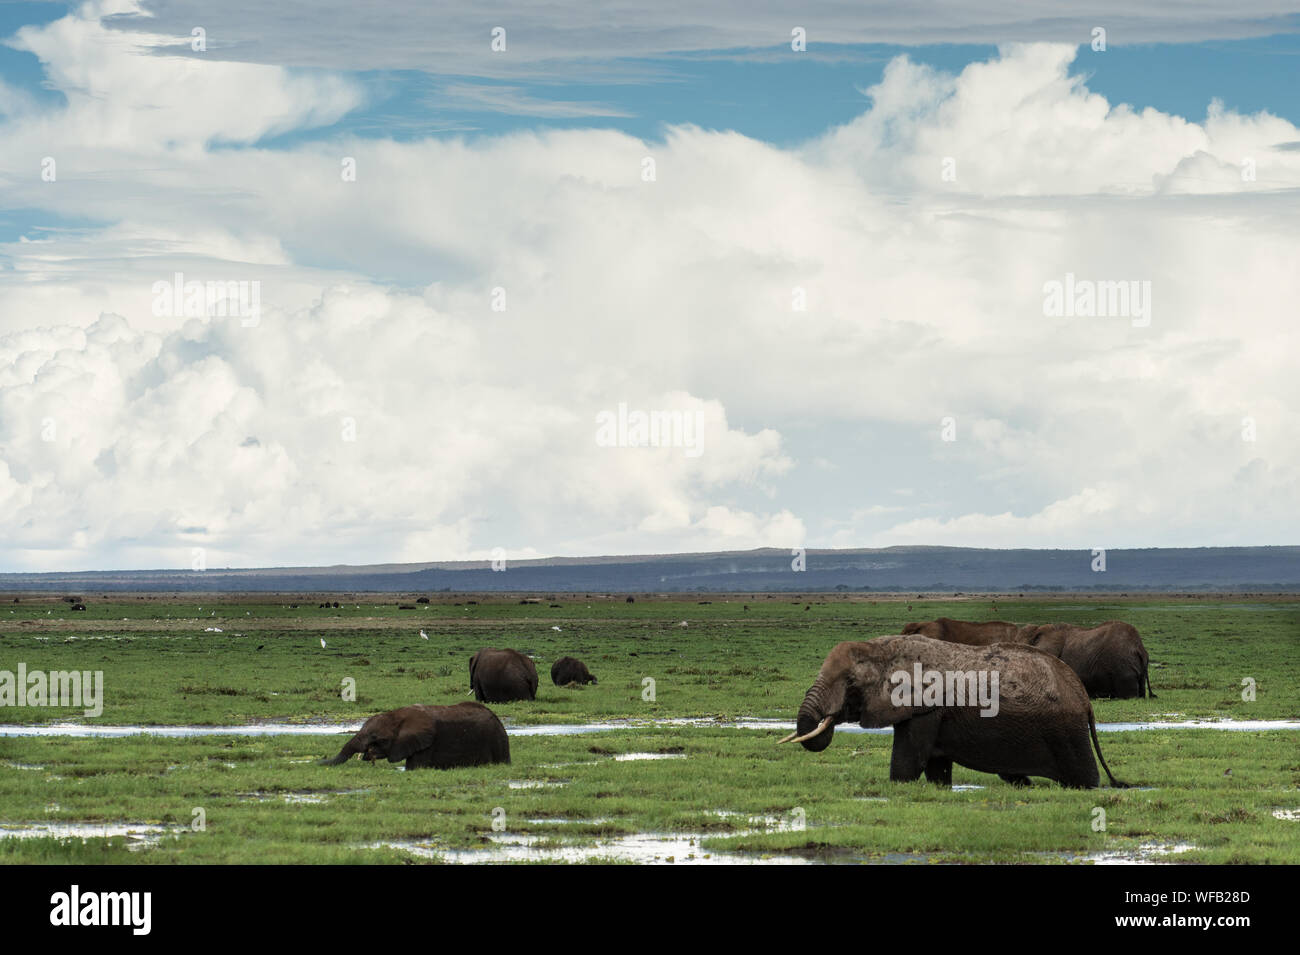 Bush d'Afrique, Loxodonta africana, l'éléphant d'Elephantidae, Parc National d'Amboseli, Kenya, Africa Banque D'Images